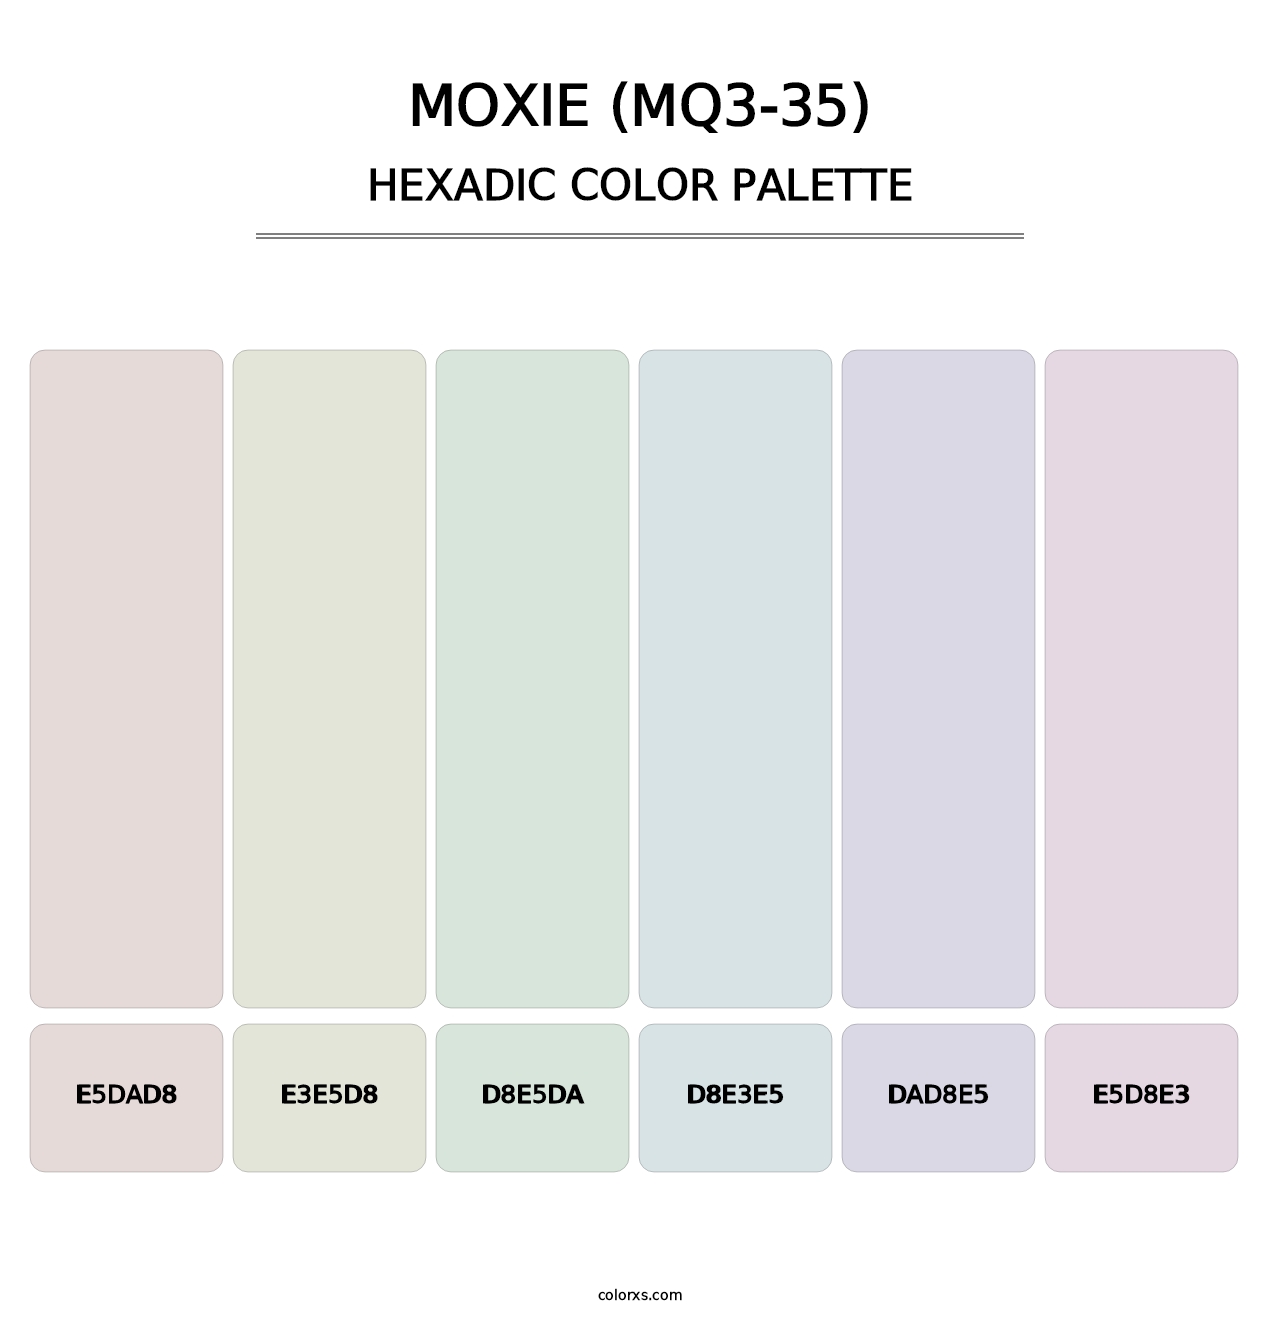 Moxie (MQ3-35) - Hexadic Color Palette